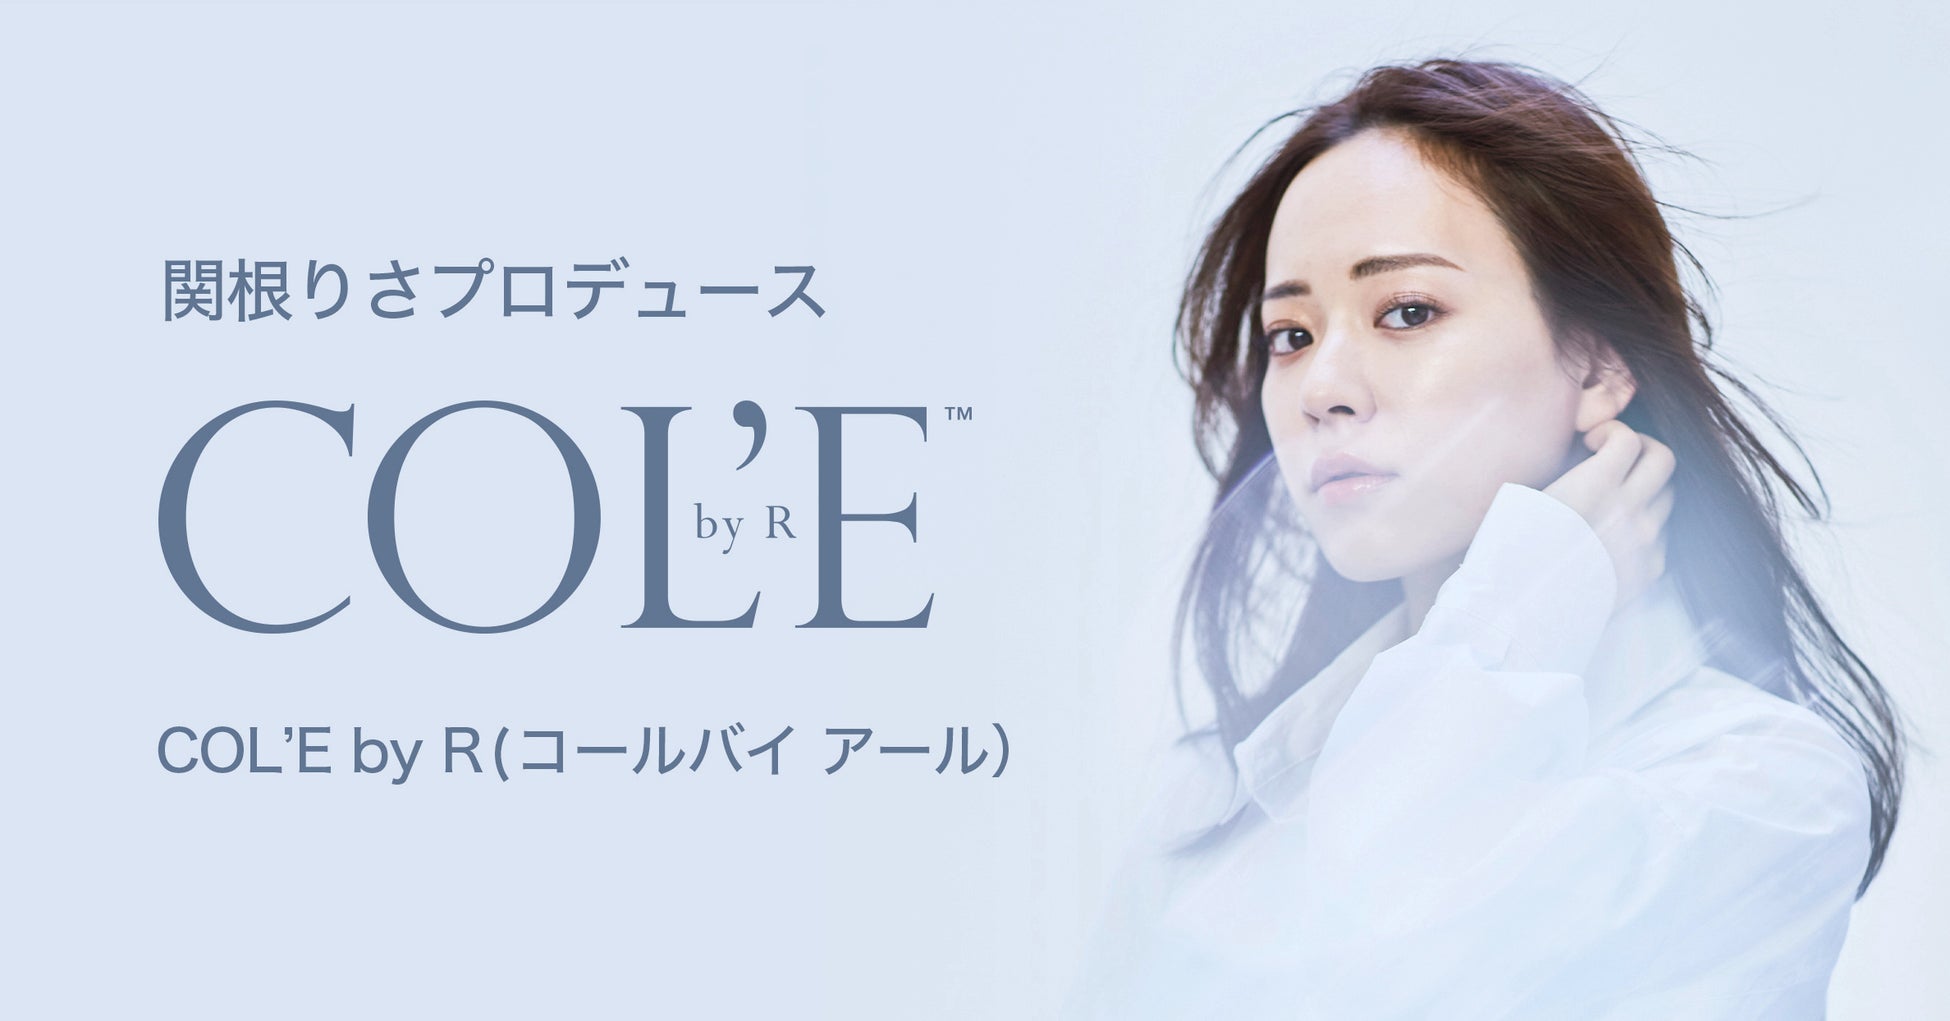 美容系YouTuber、関根りさがプロデュースしたコスメブランド「COL’E by R（コールバイアール）」が9月5日より@cosme TOKYOにて販売開始